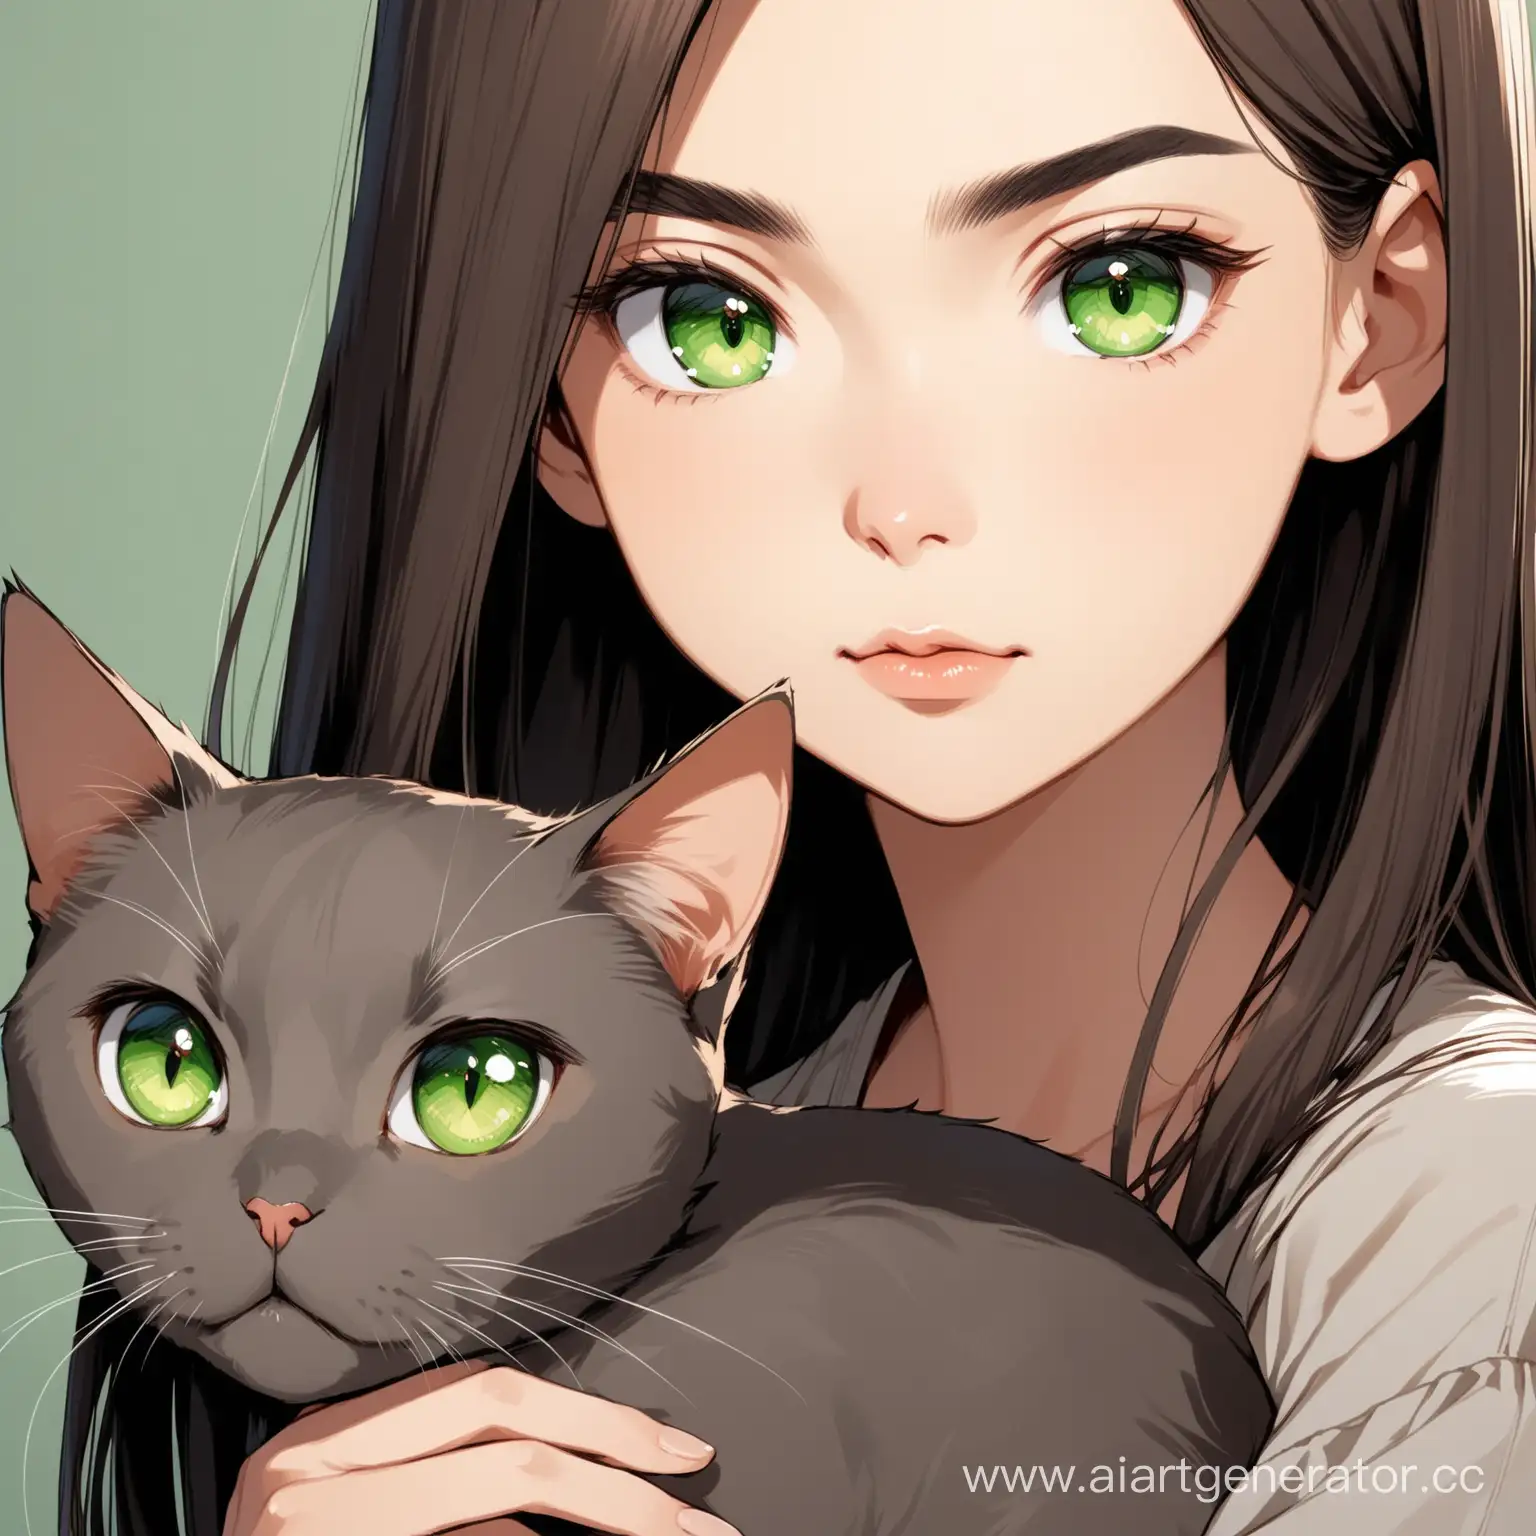 Молодая девушка с овальным лицом и немного выделенными скулами, темными каштановыми прямыми волосами средней длины, зелеными глазами, тонкими бровями и тонкими губами, рядом с ней серая кошка. 